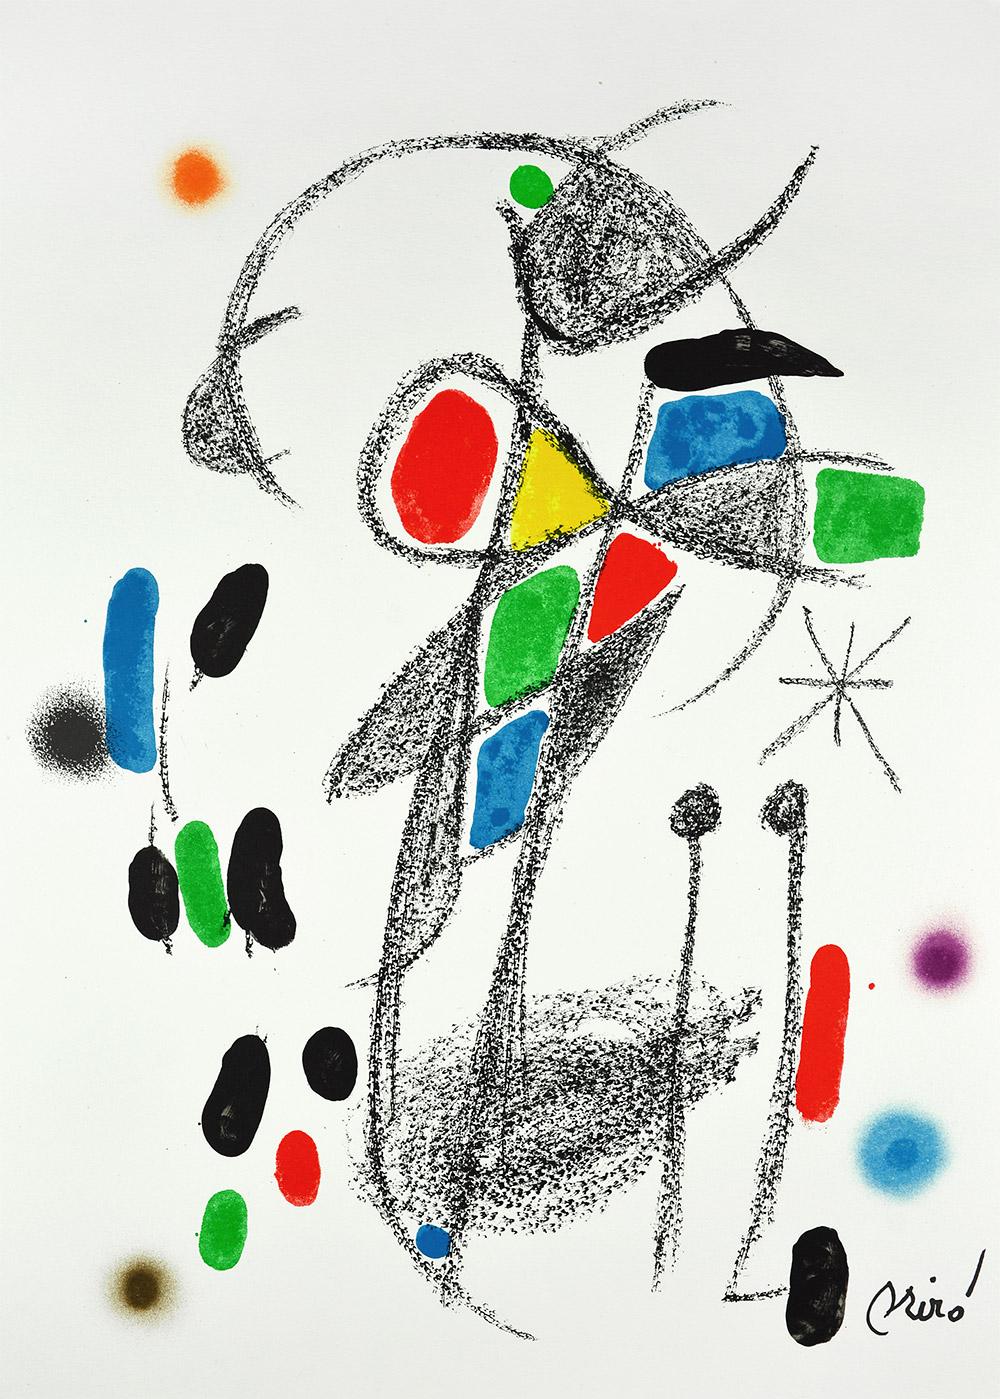 Joan Miró - Maravillas con variaciones acrósticas en el jardín de Miró XVIII
Date de création : 1975
Support : Lithographie sur papier Gvarro
Édition : 1500
Taille : 49,5 x 35,5 cm
Observations : Lithographie sur plaque de papier Gvarro signée.